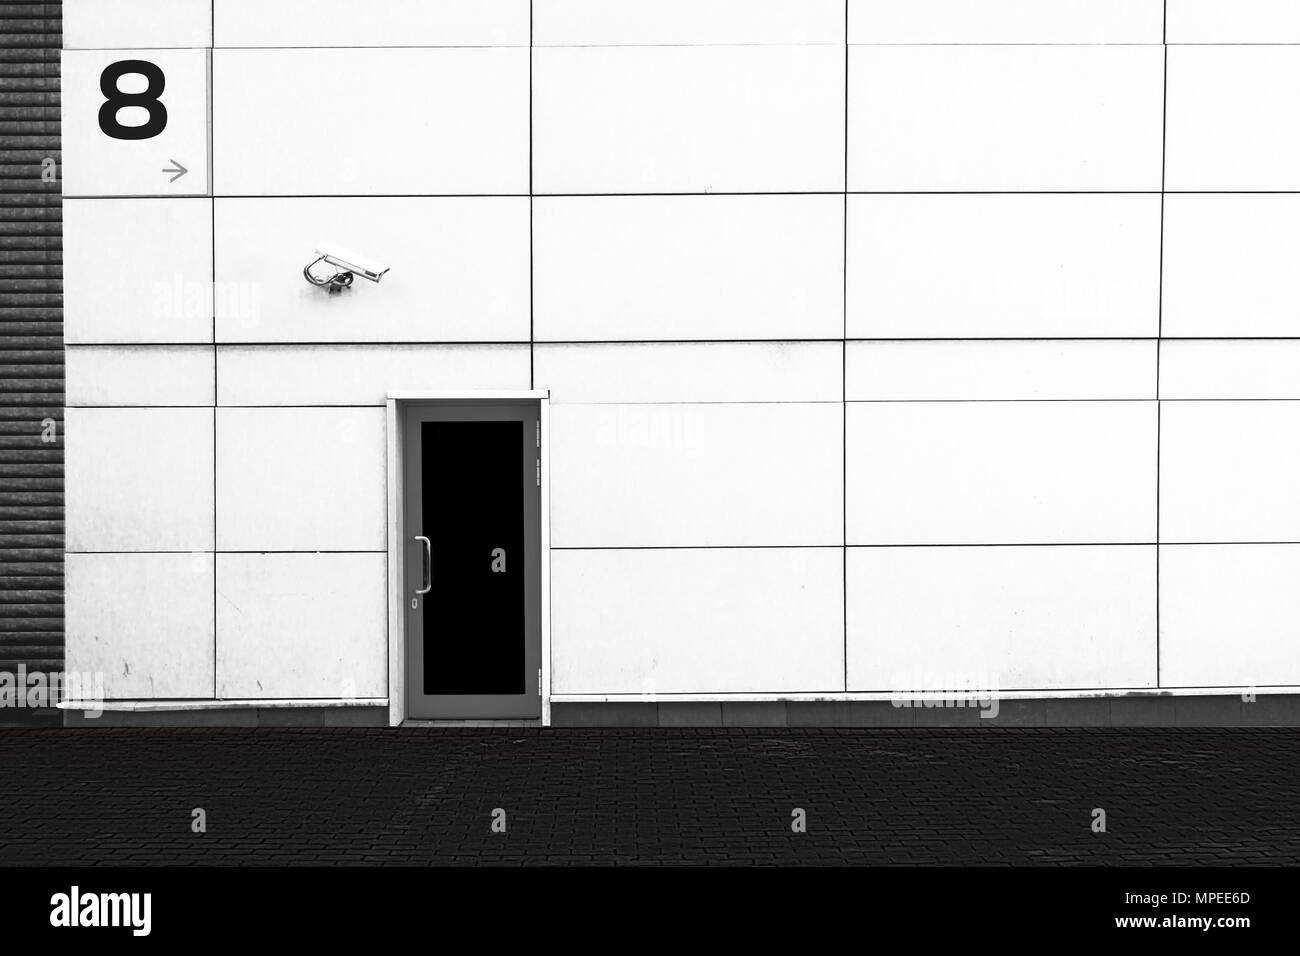 Die Mauer des Gebäudes, die Tür und der CCTV-Kamera. Sicherheit. Schwarzen und weißen Hintergrund. Stockfoto